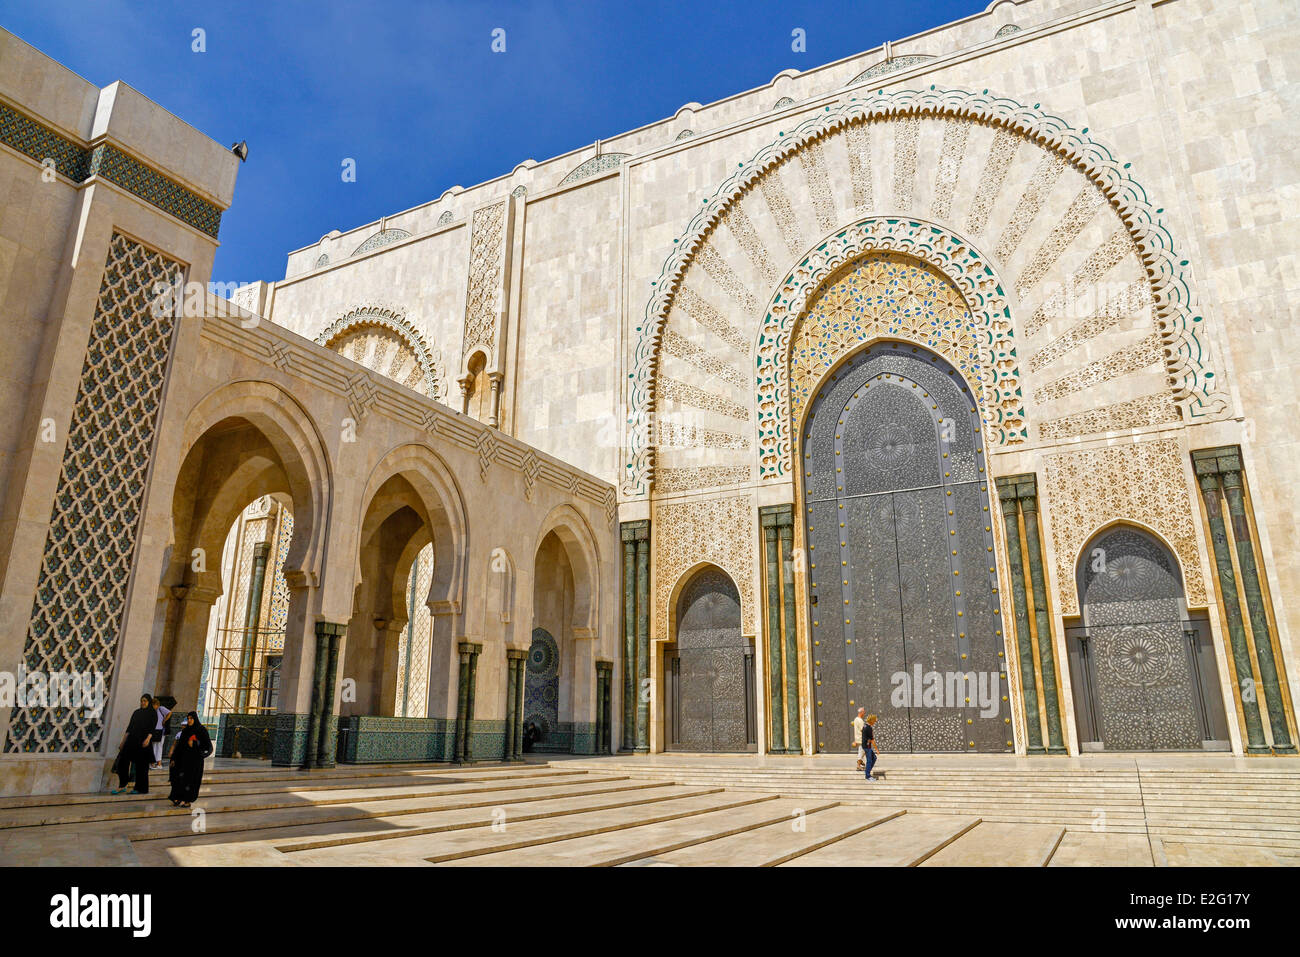 Marocco Casablanca Grande Moschea Hassan II di musulmani in stile arabo costruito dall'architetto Michel Pinseau nel 1986 Foto Stock